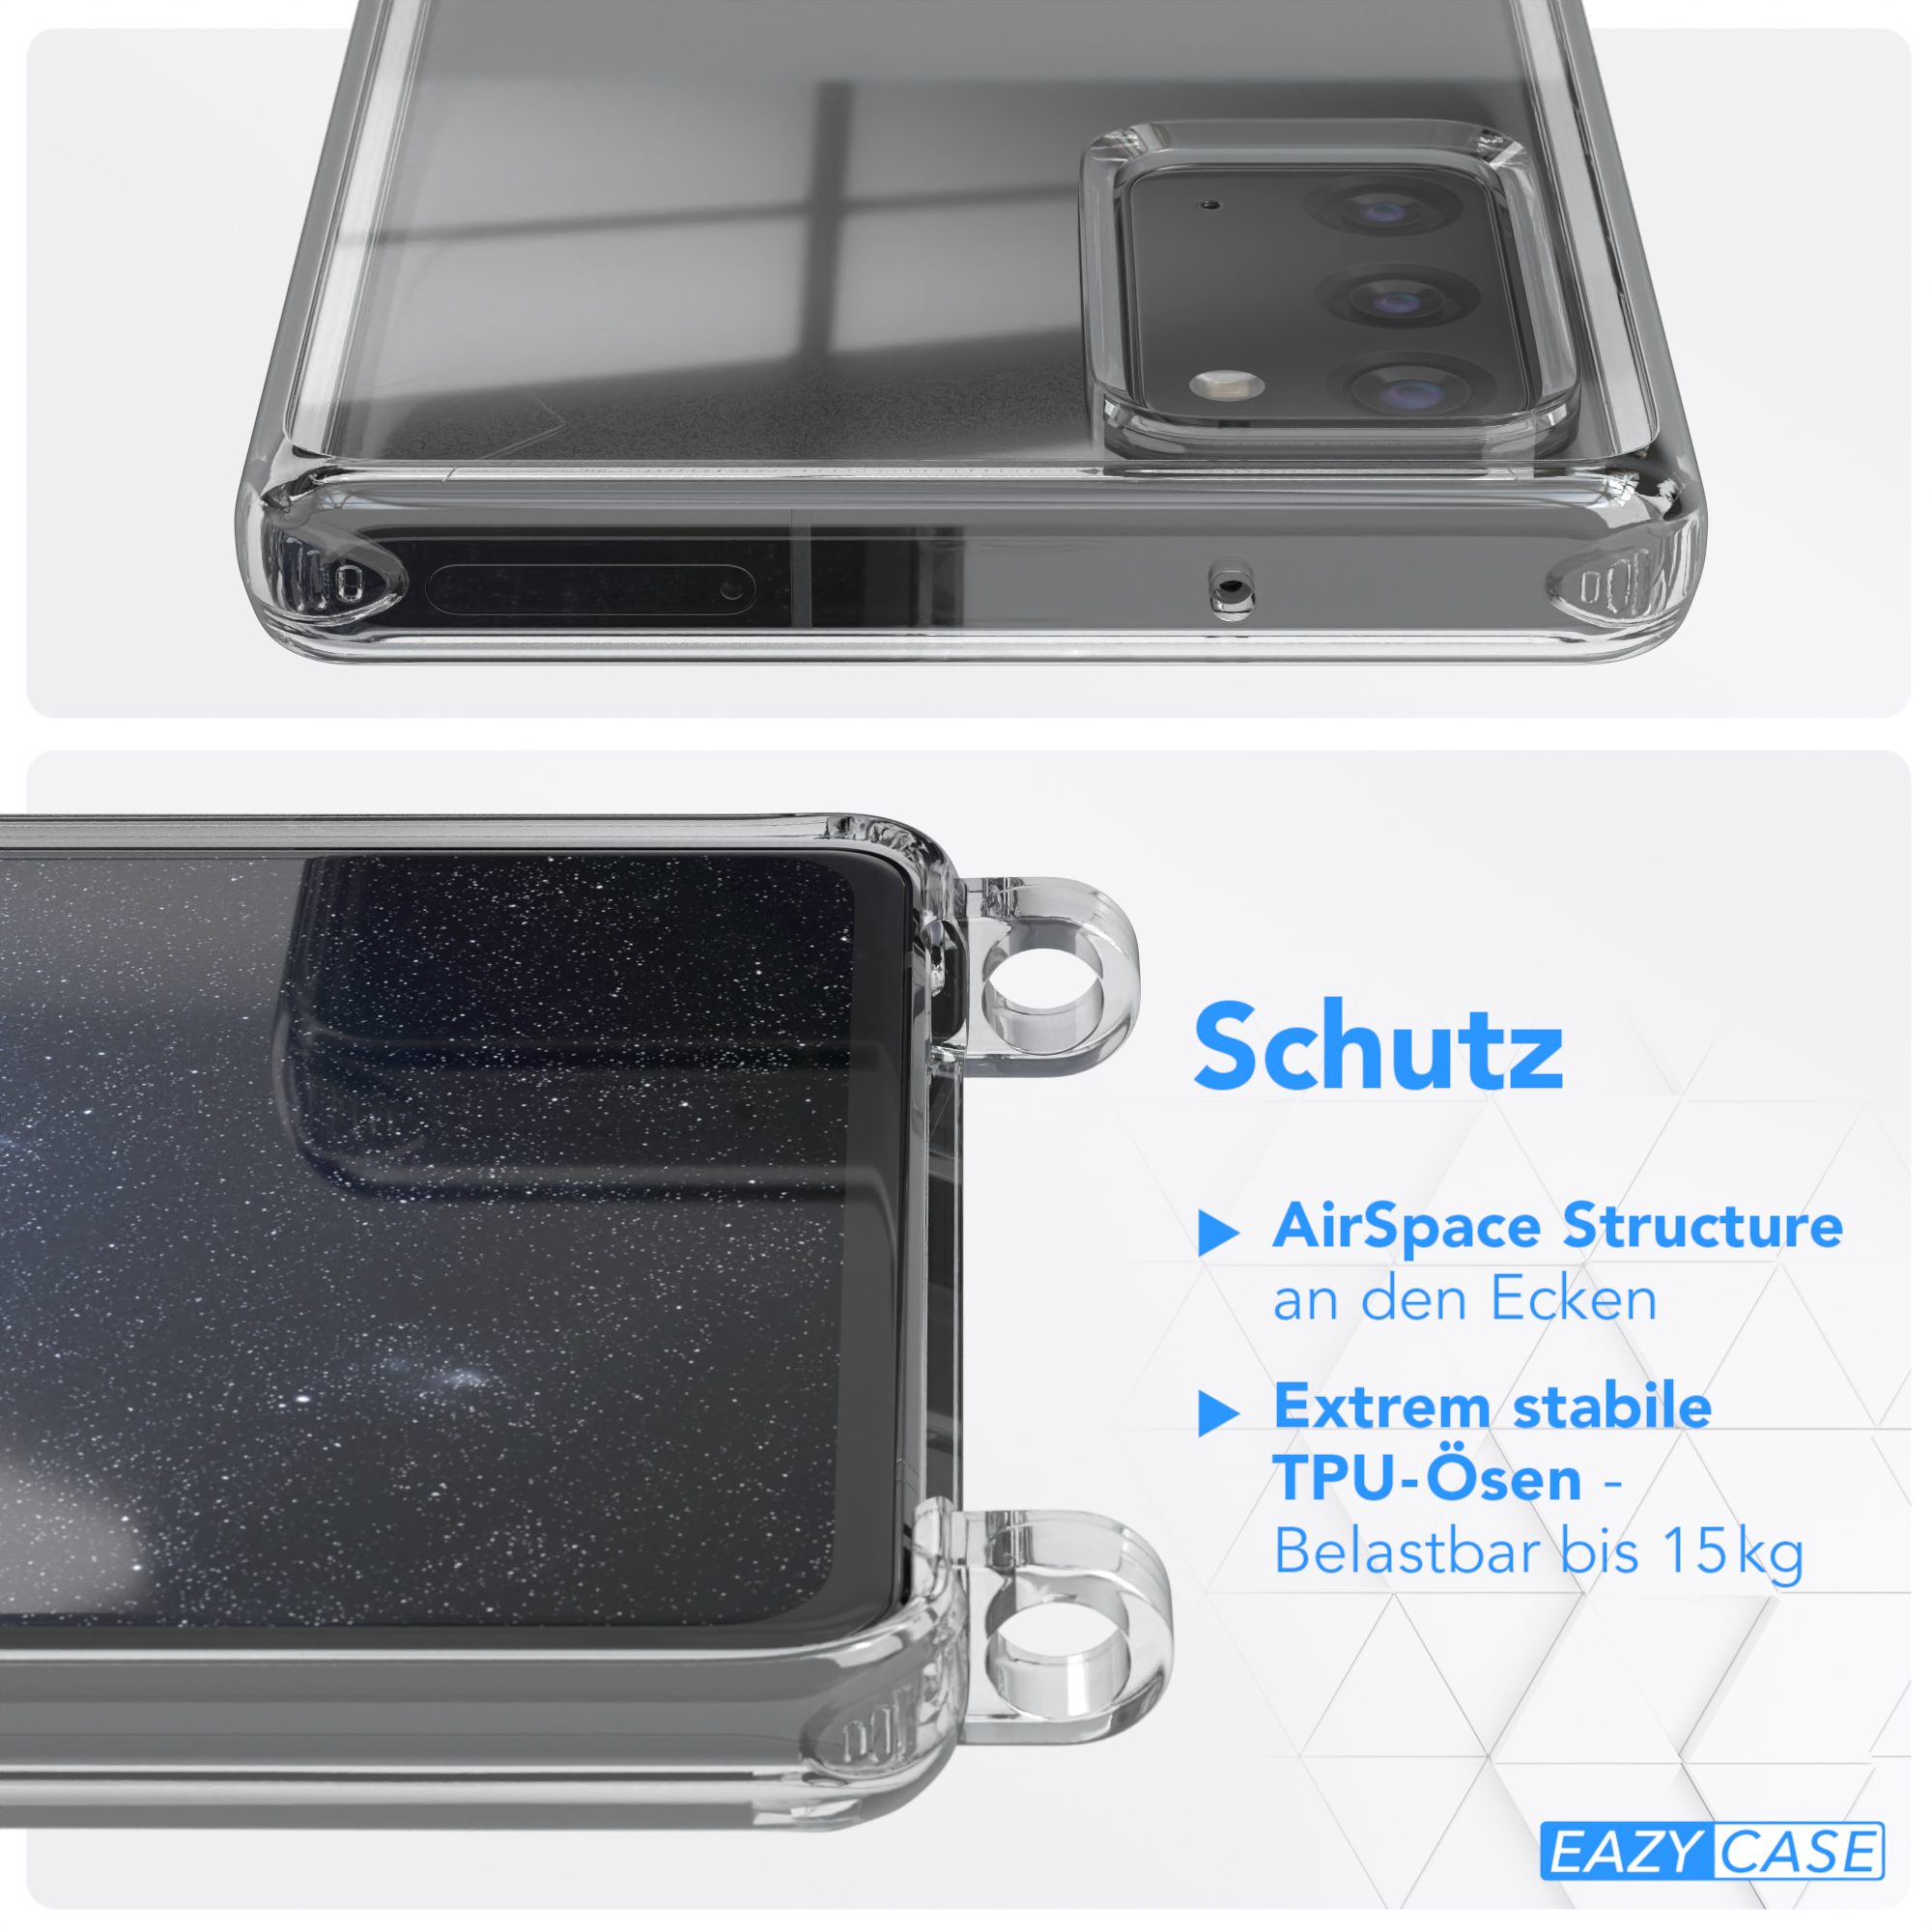 Galaxy Note Umhängetasche, Note 5G, Blau breiter 20 Karabiner, + / Dunkel Samsung, mit / Kordel Handyhülle 20 Gold EAZY Transparente CASE